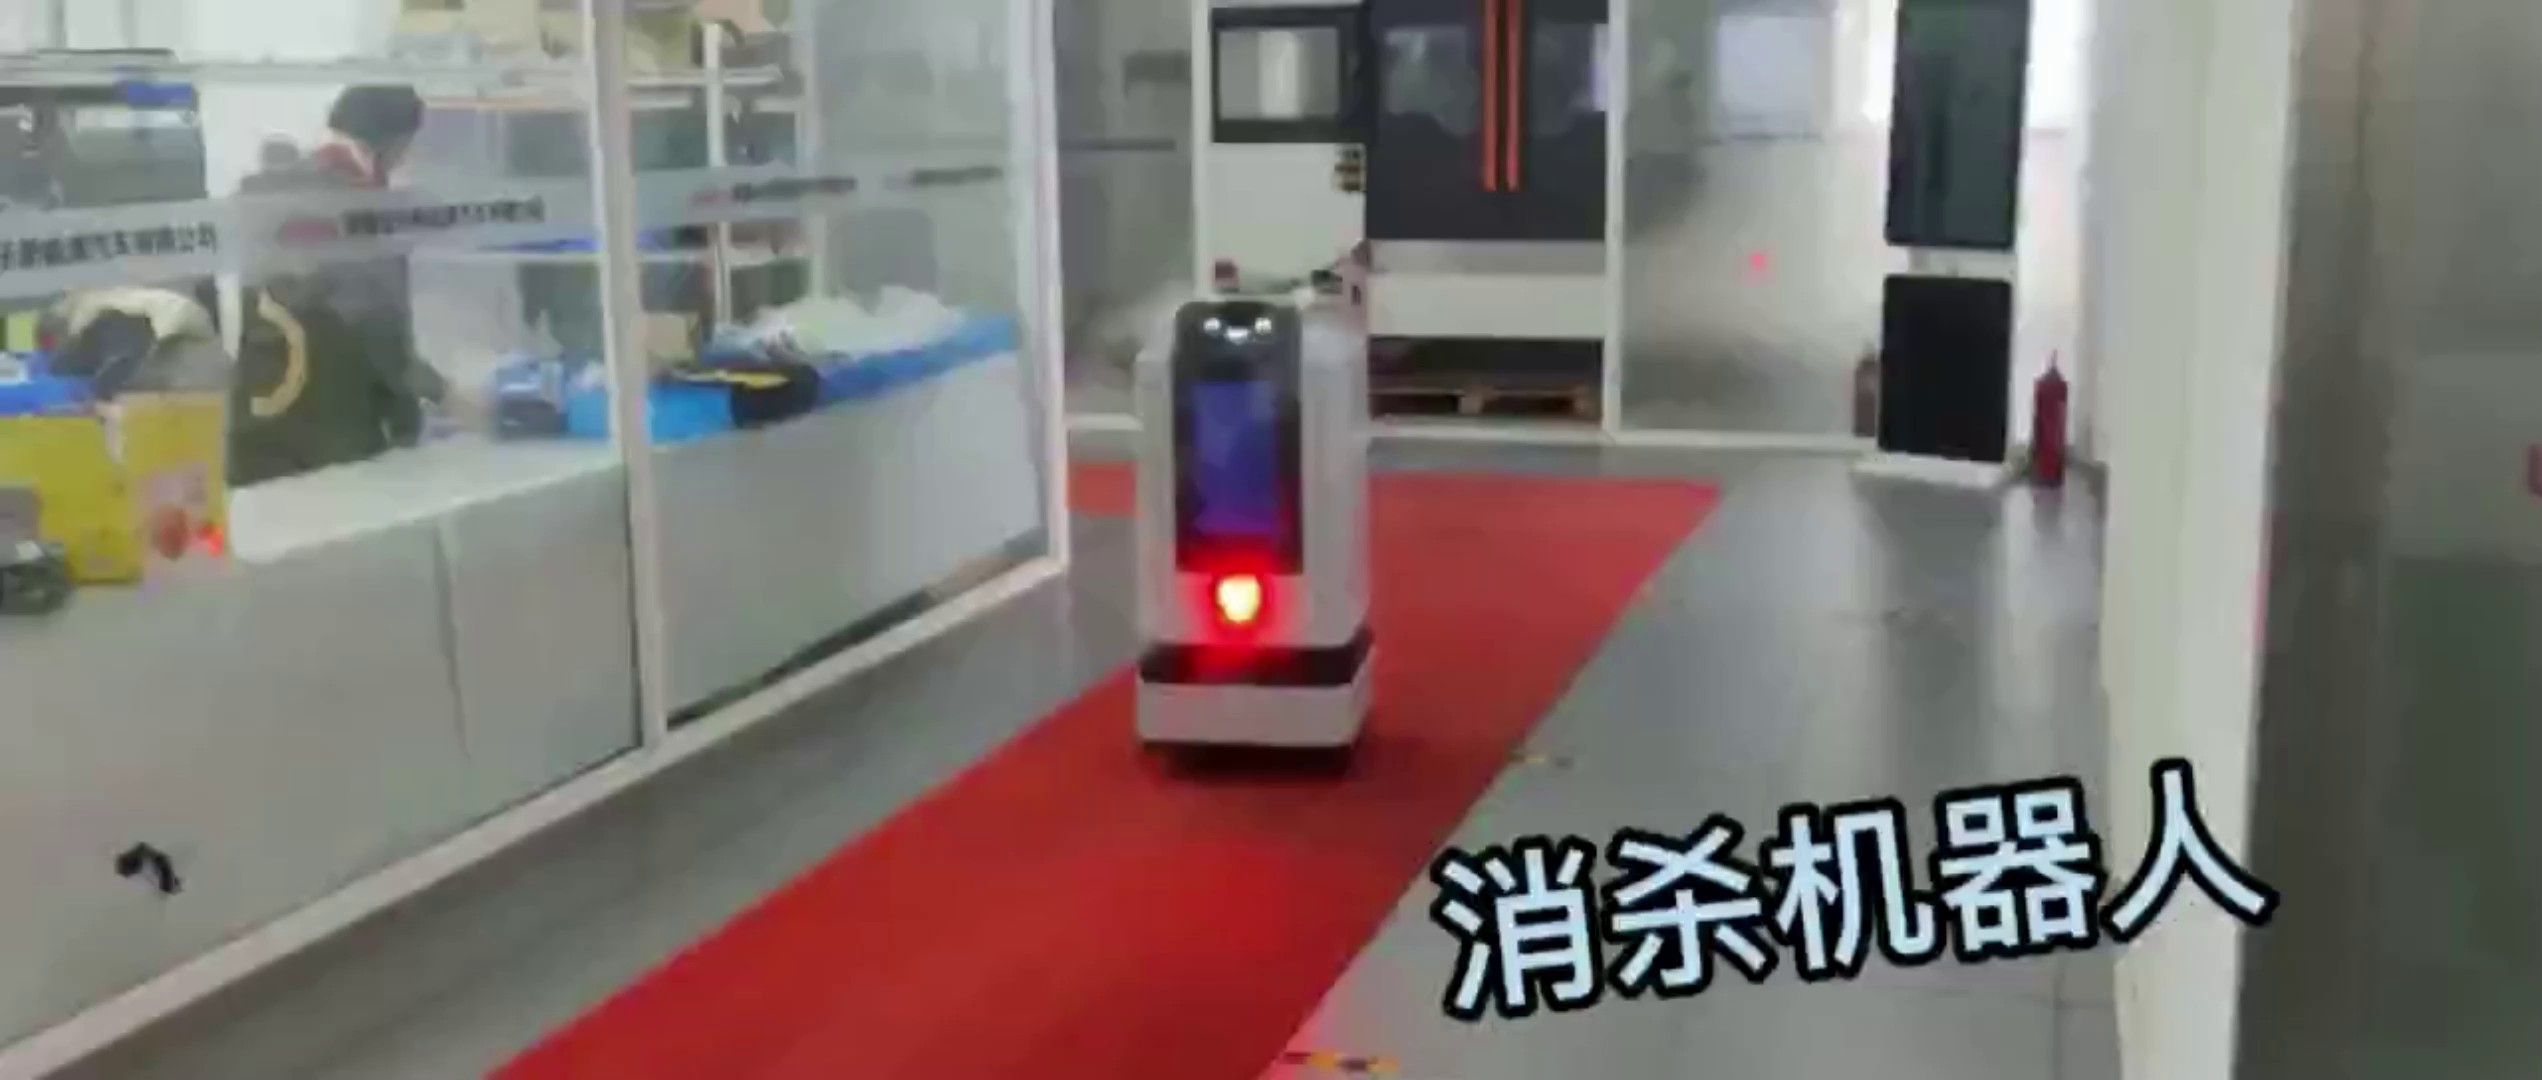 北京网联机器人商家,机器人